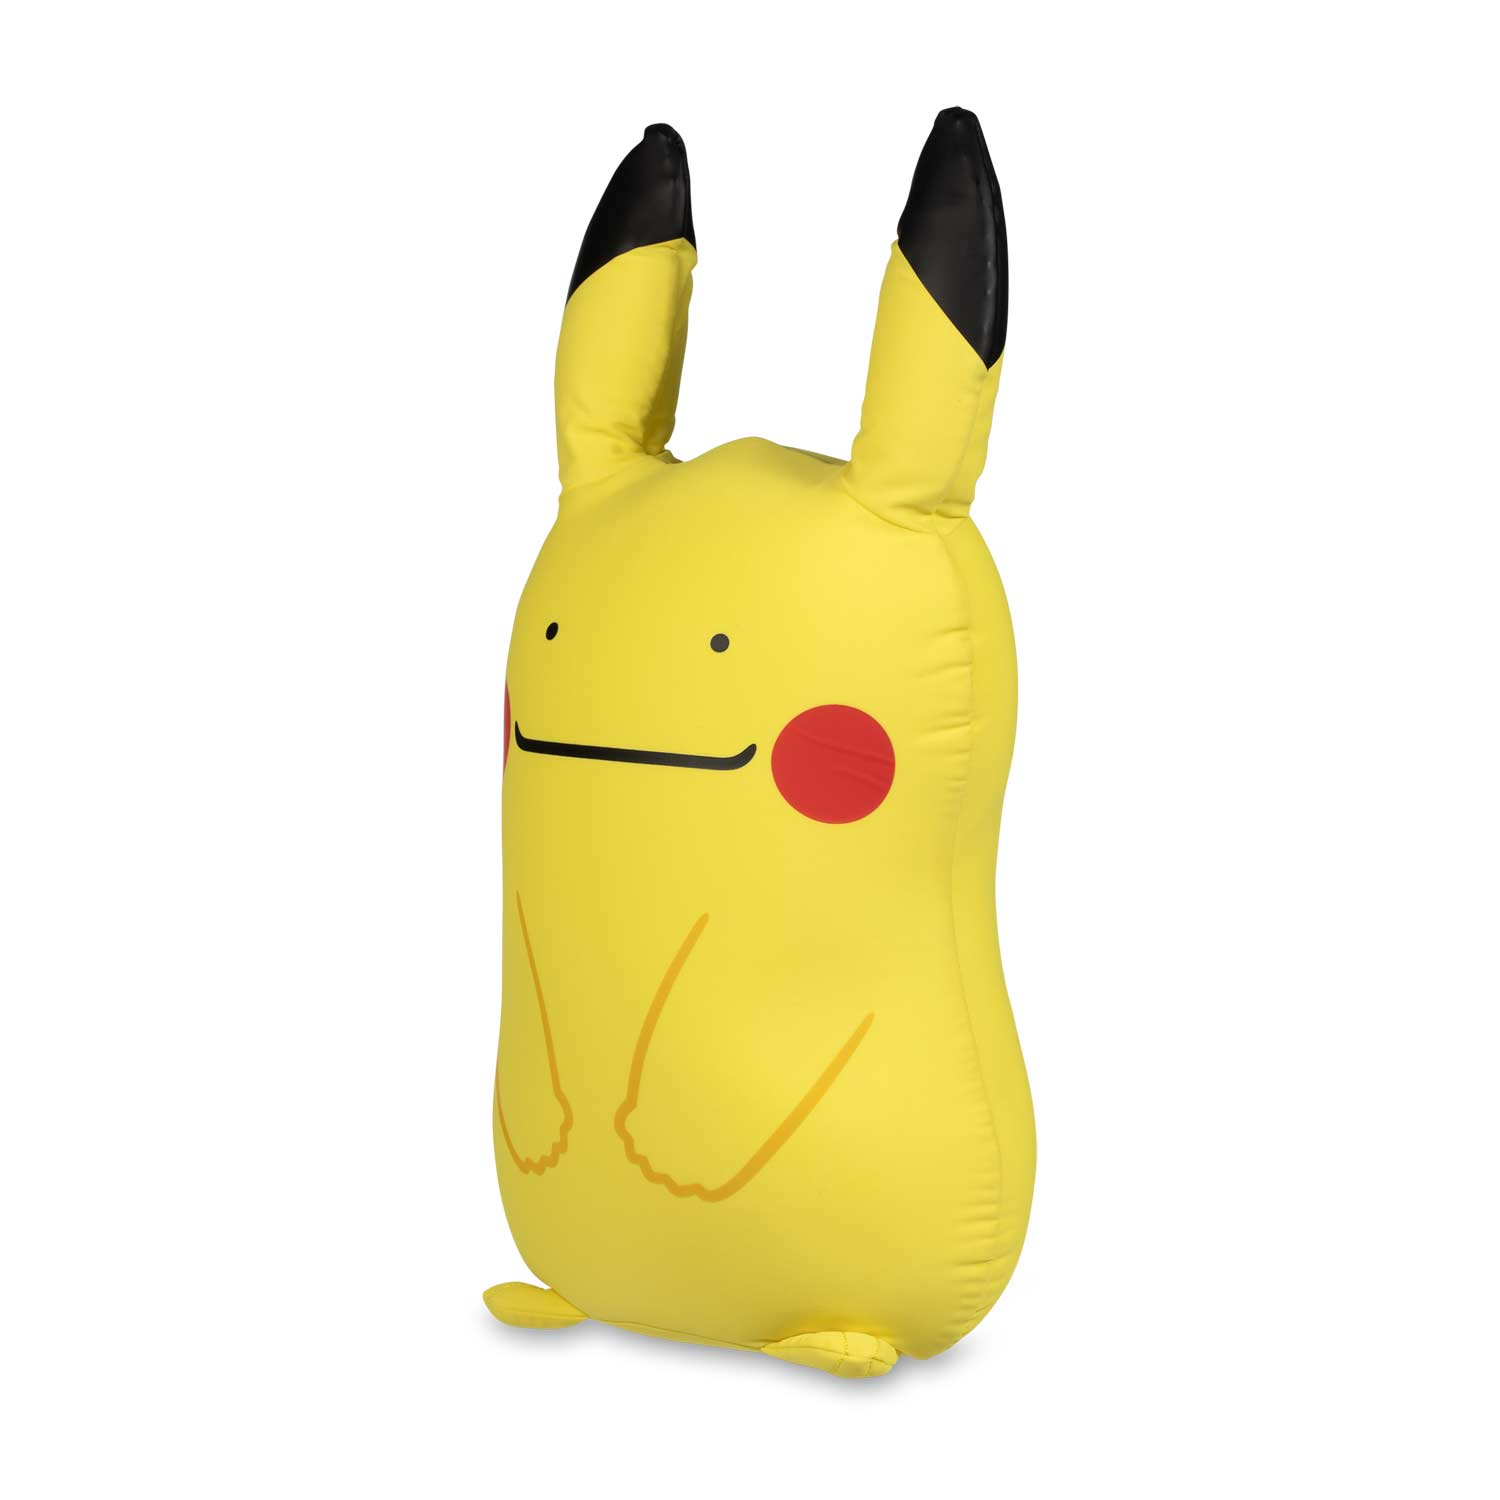 surprised pikachu plush